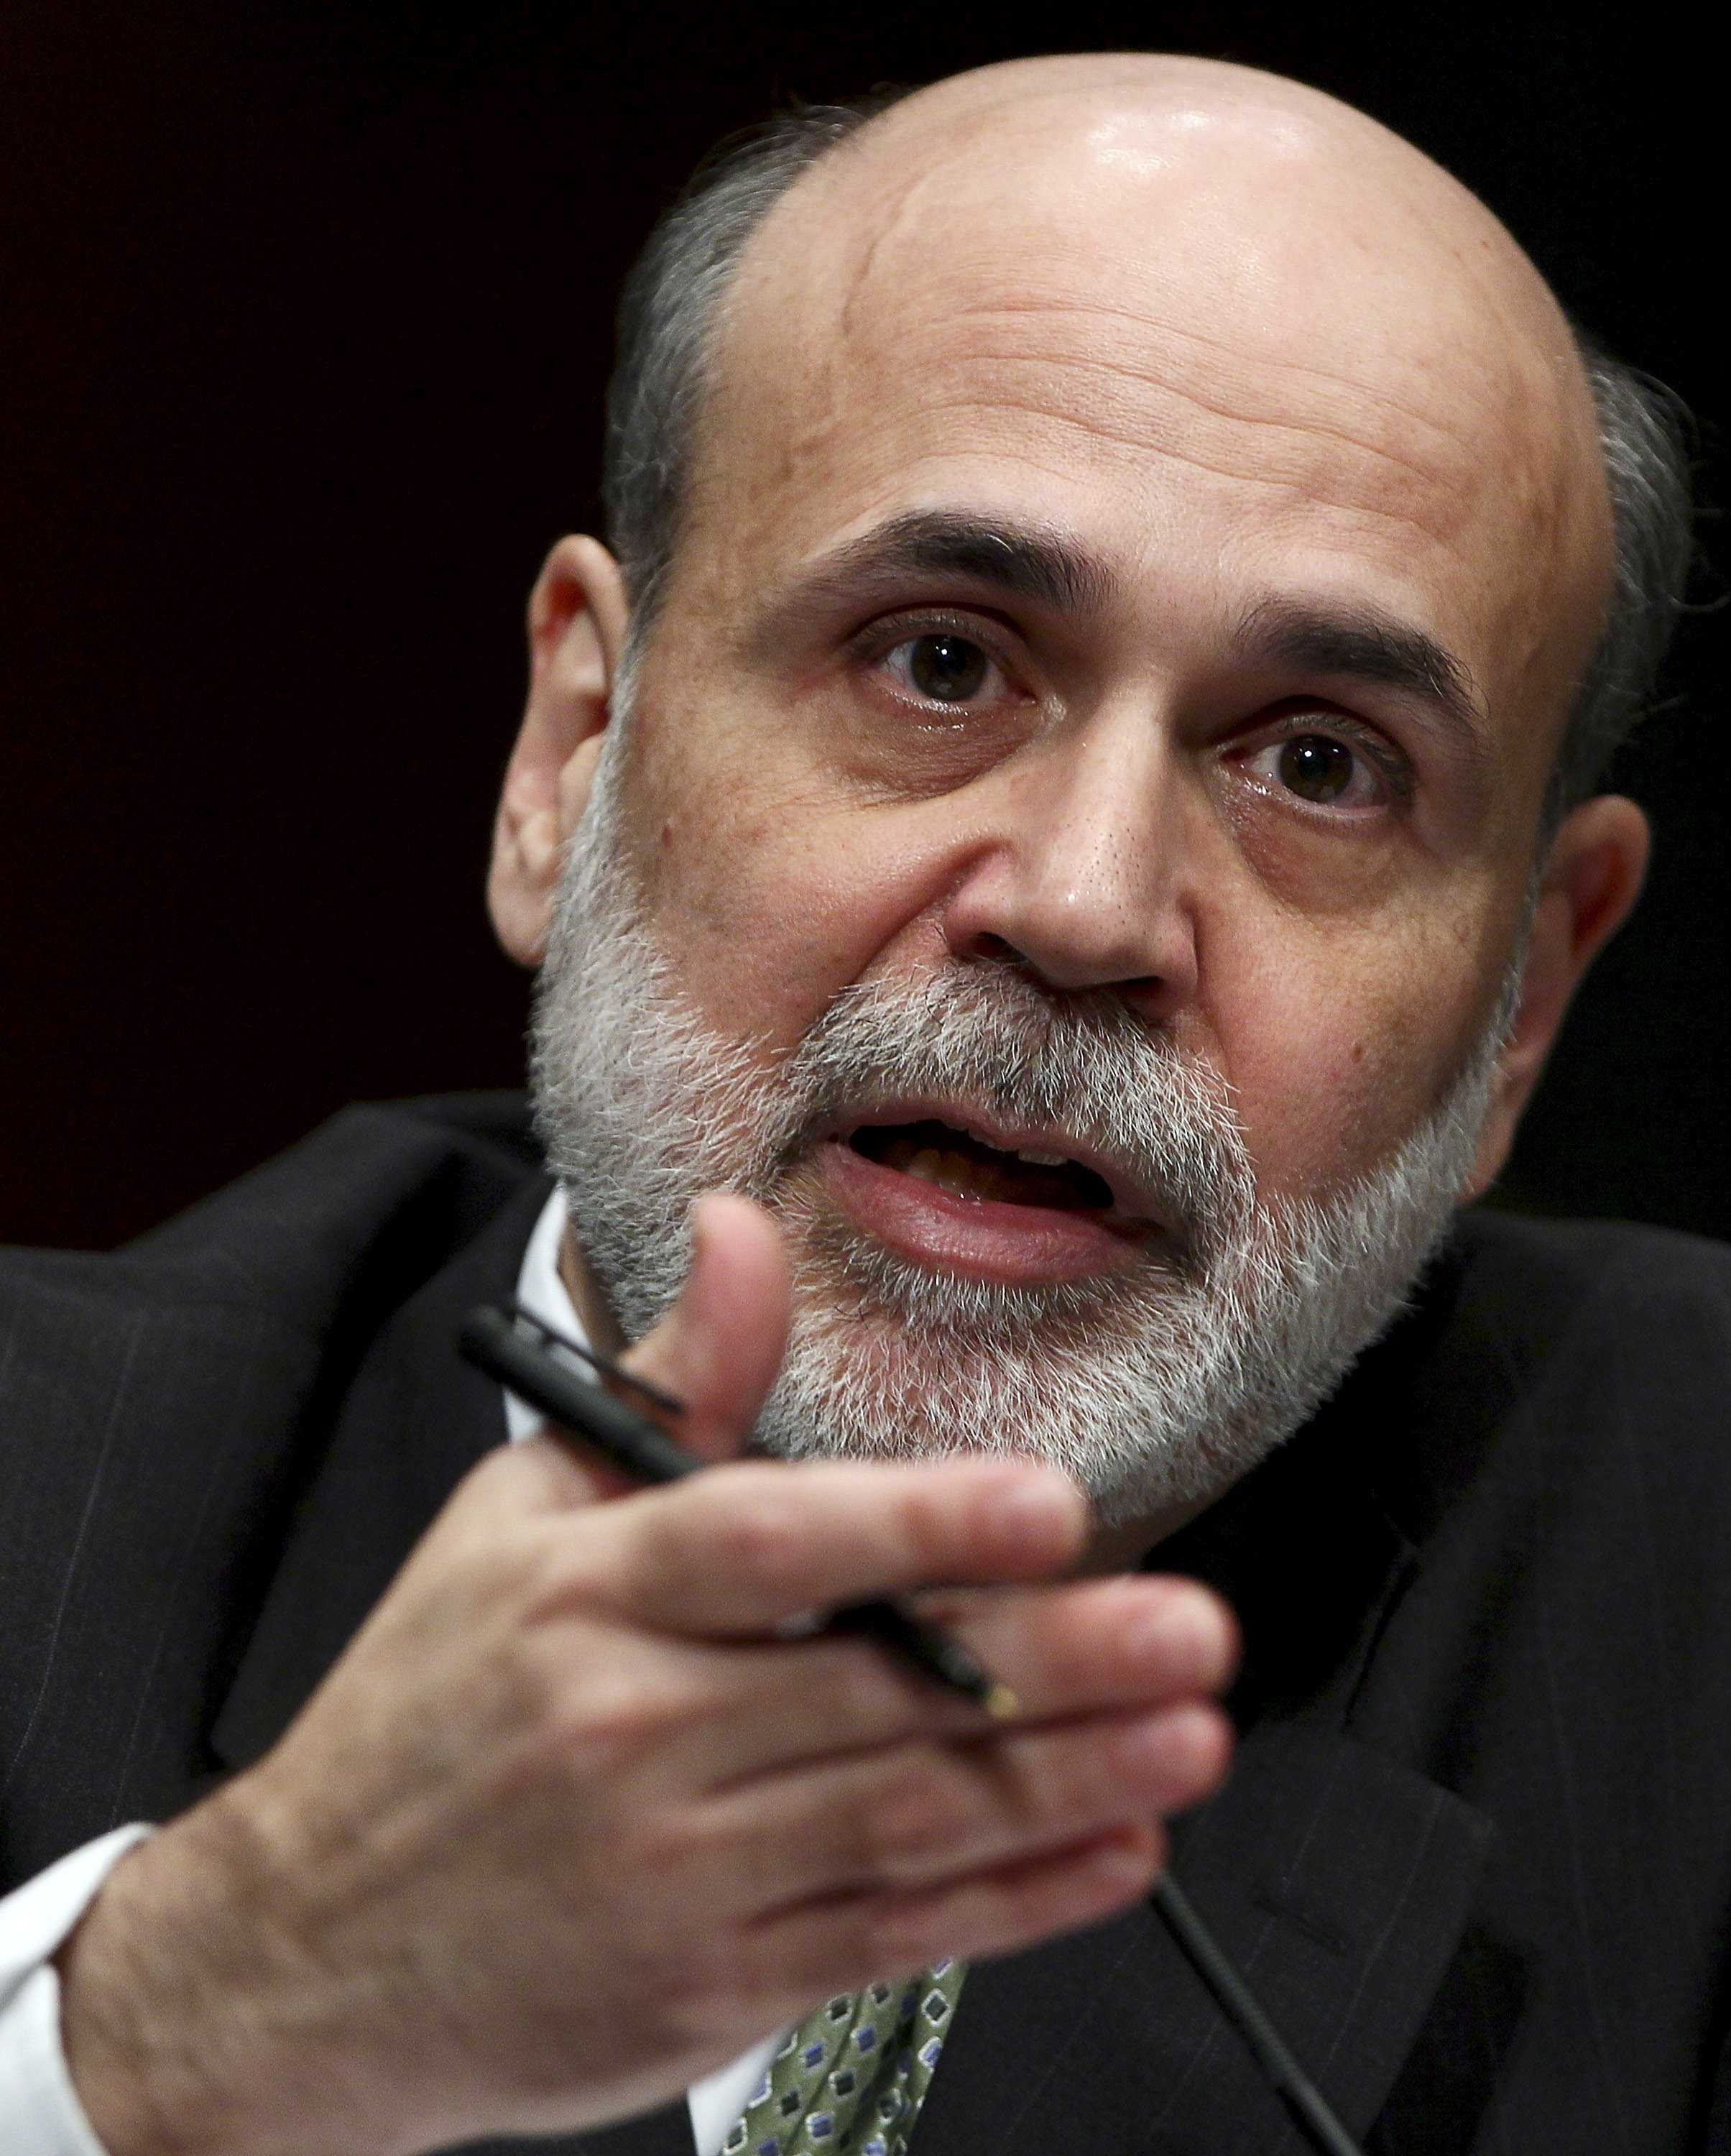 Ben Bernanke Image